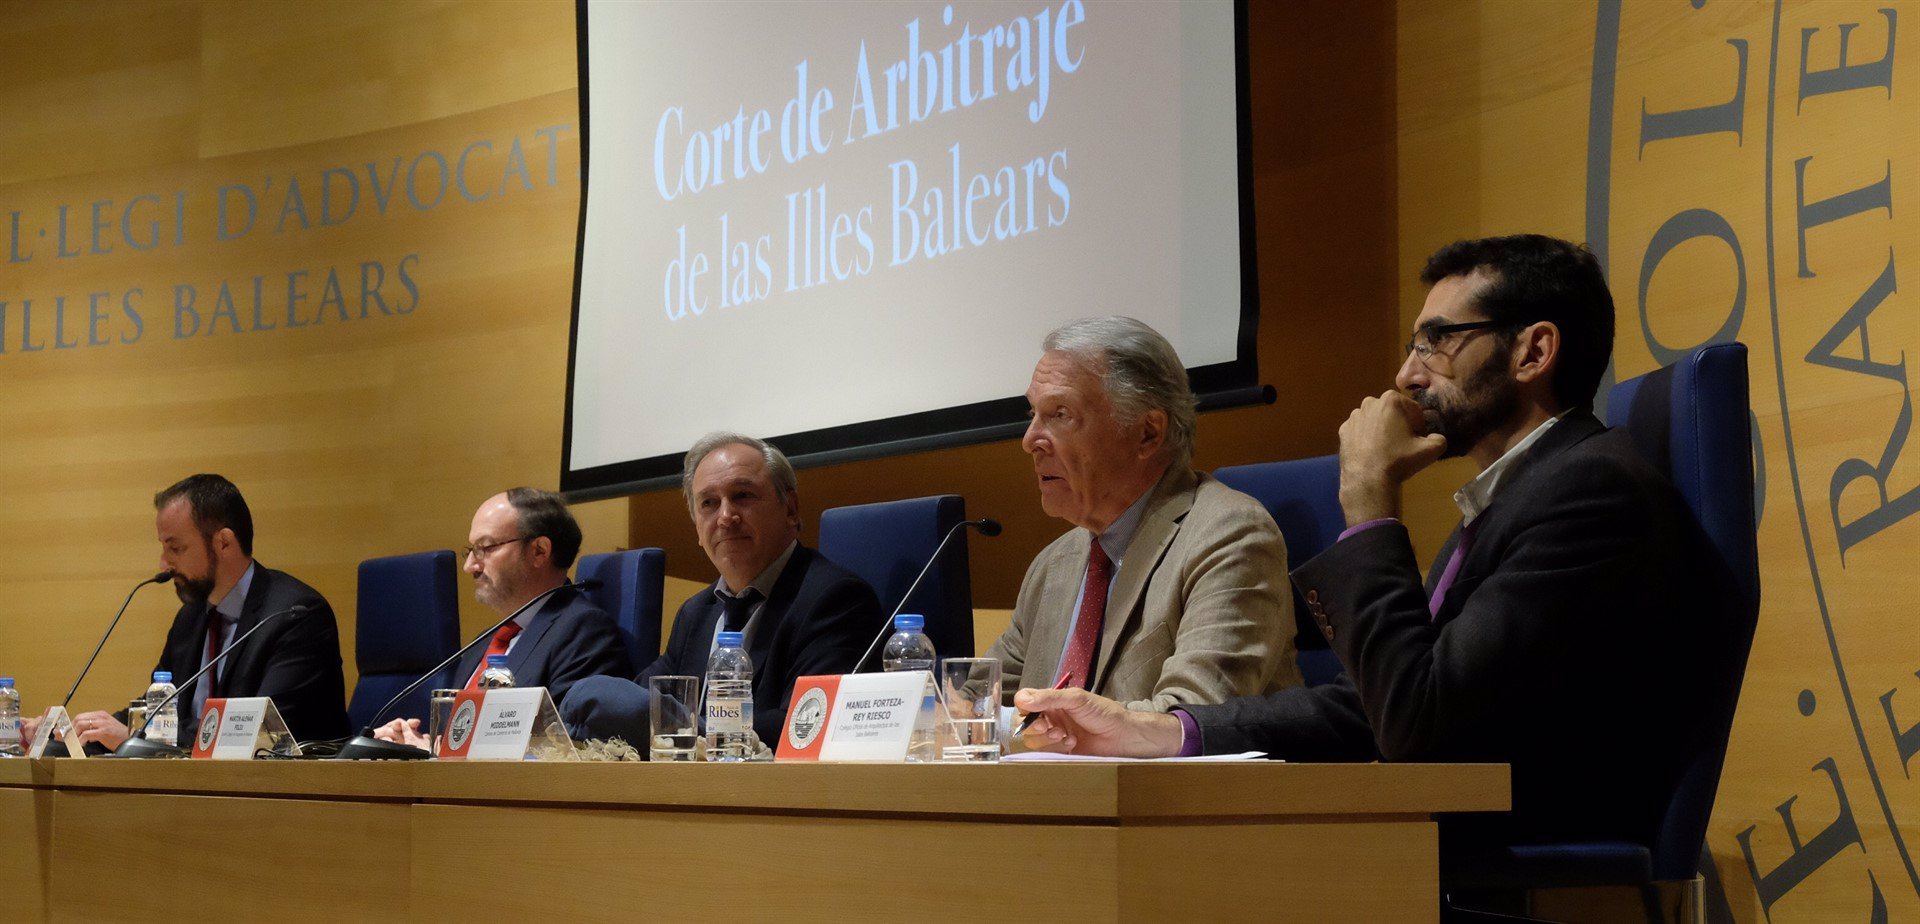 Nace la Corte de Arbitraje de Baleares como alternativa extrajudicial para solucionar conflictos